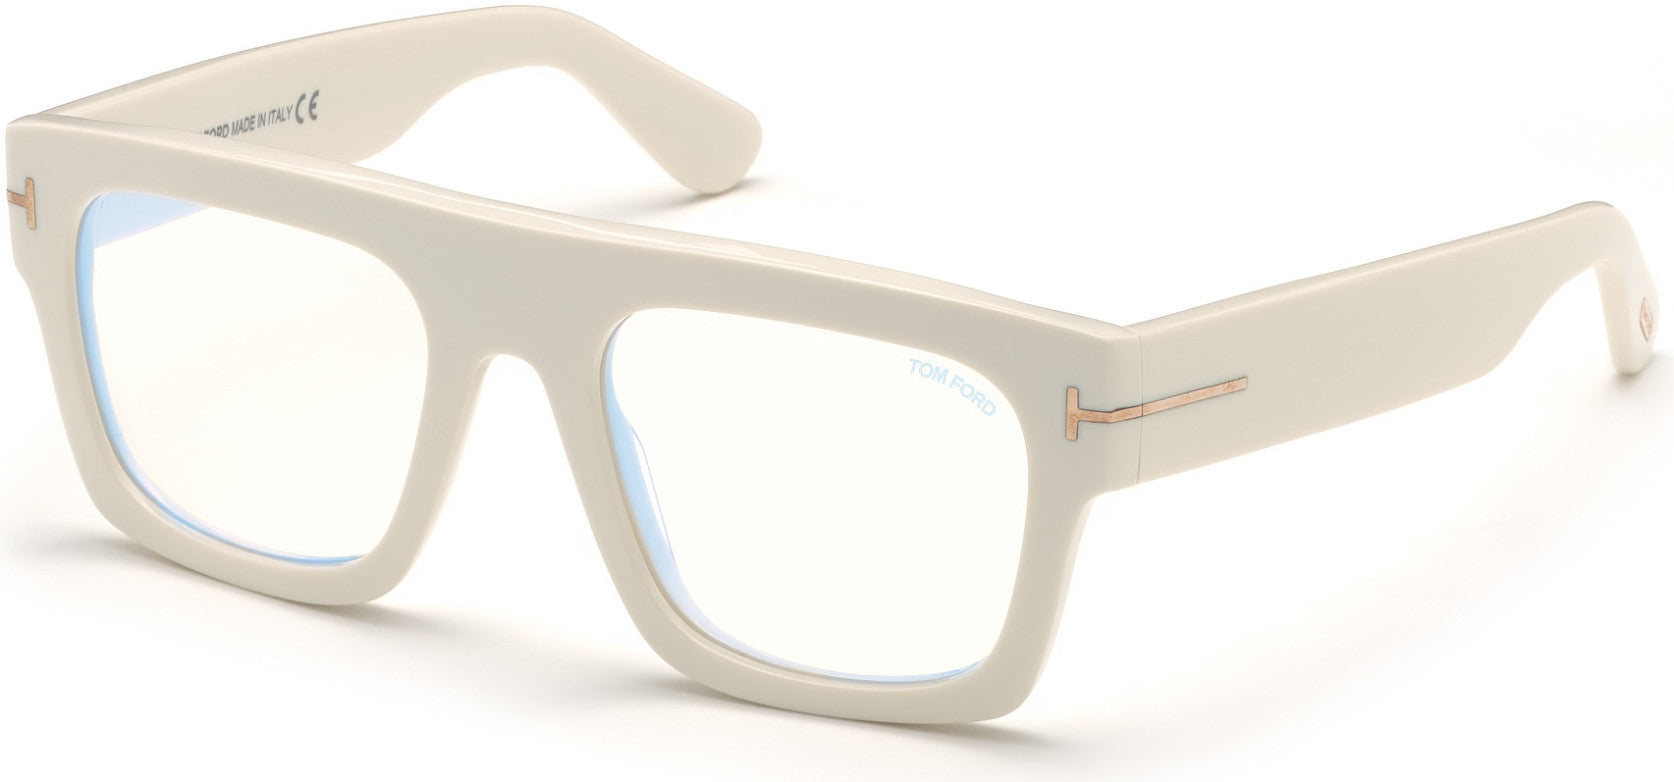 Tom Ford FT5634-B Geometric Eyeglasses 025-025 - Shiny White, Rose Gold "t" Logo/ Blue Block Lenses